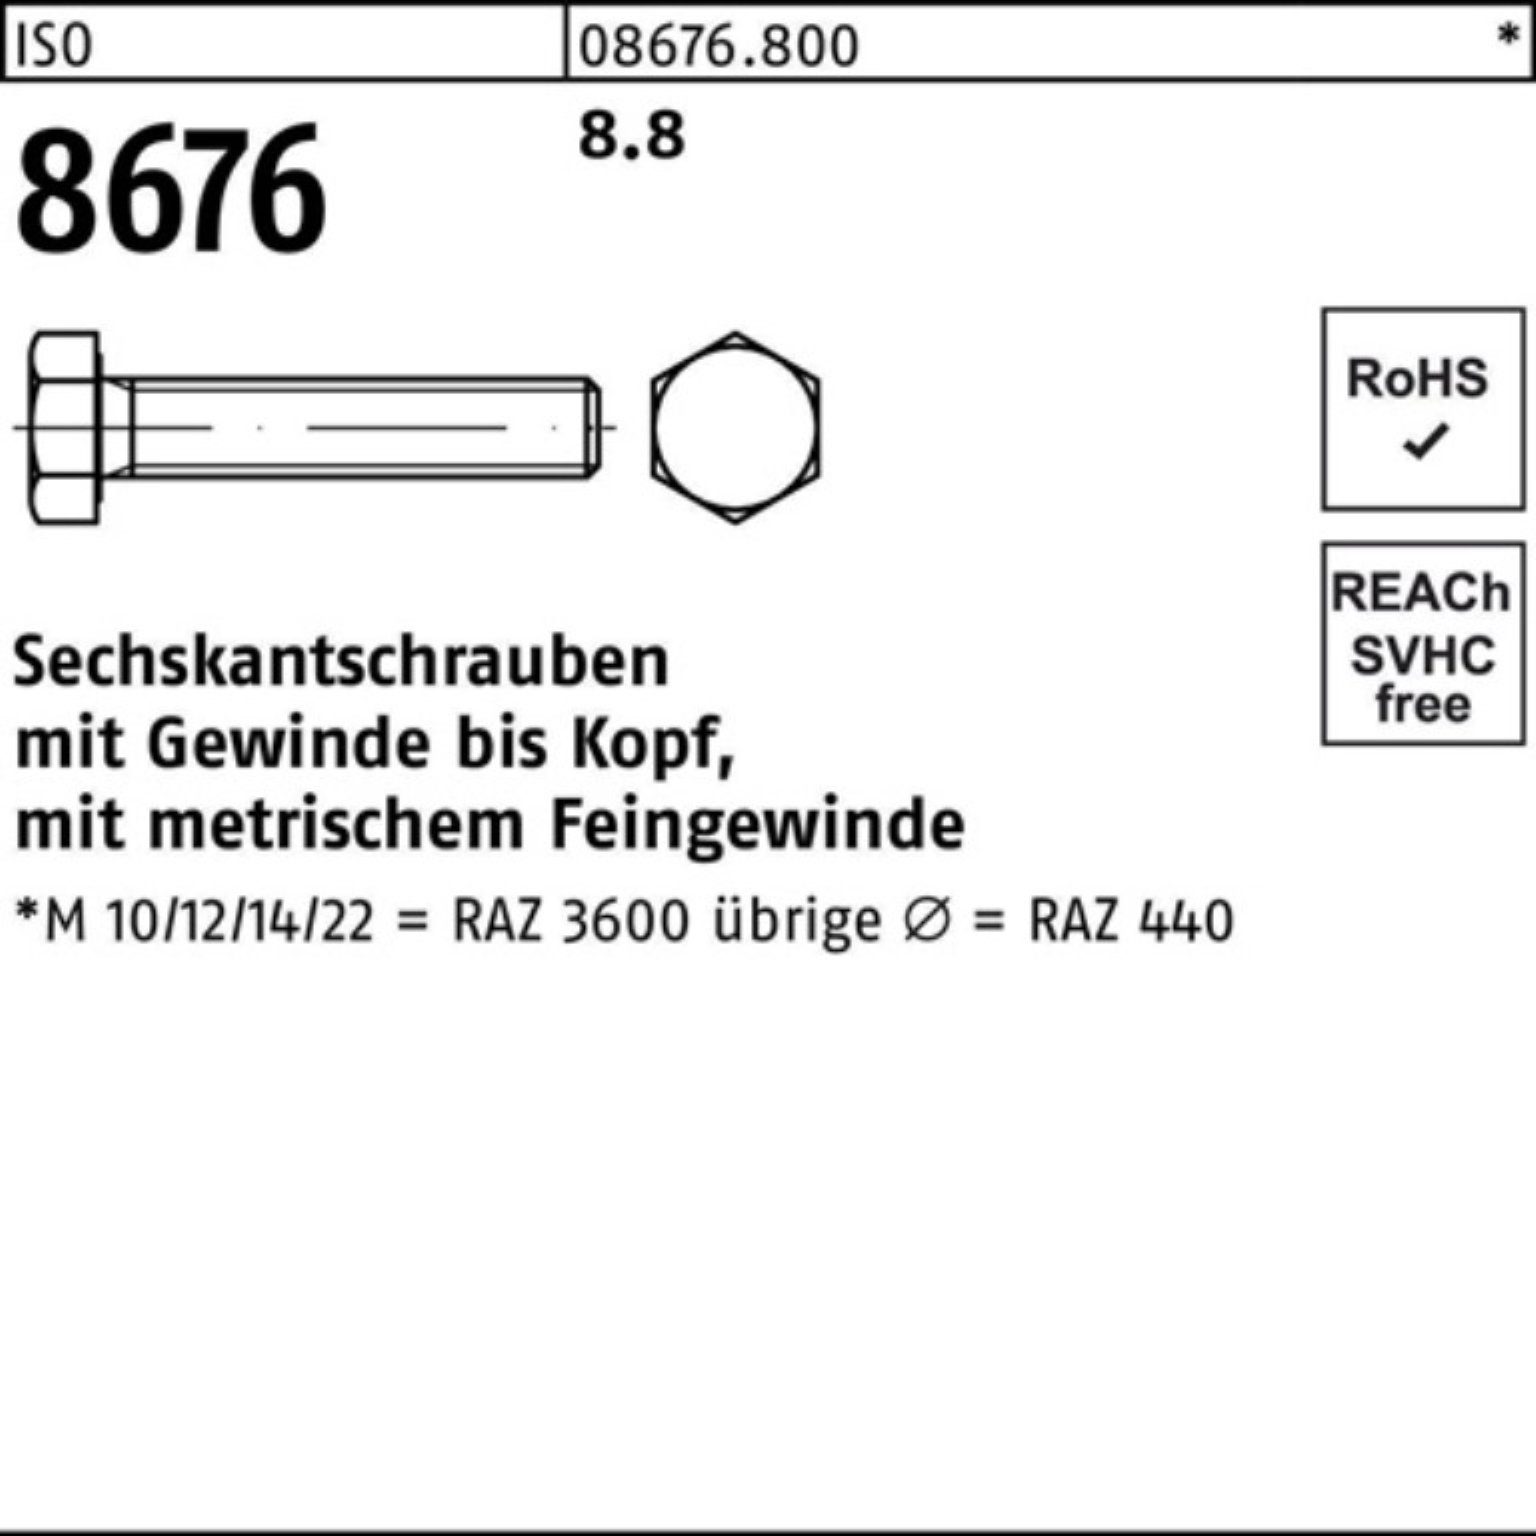 ISO Sechskantschraube Pack 100er 8.8 M12x1,25x110 Sechskantschraube Stück 50 IS VG 8676 Reyher